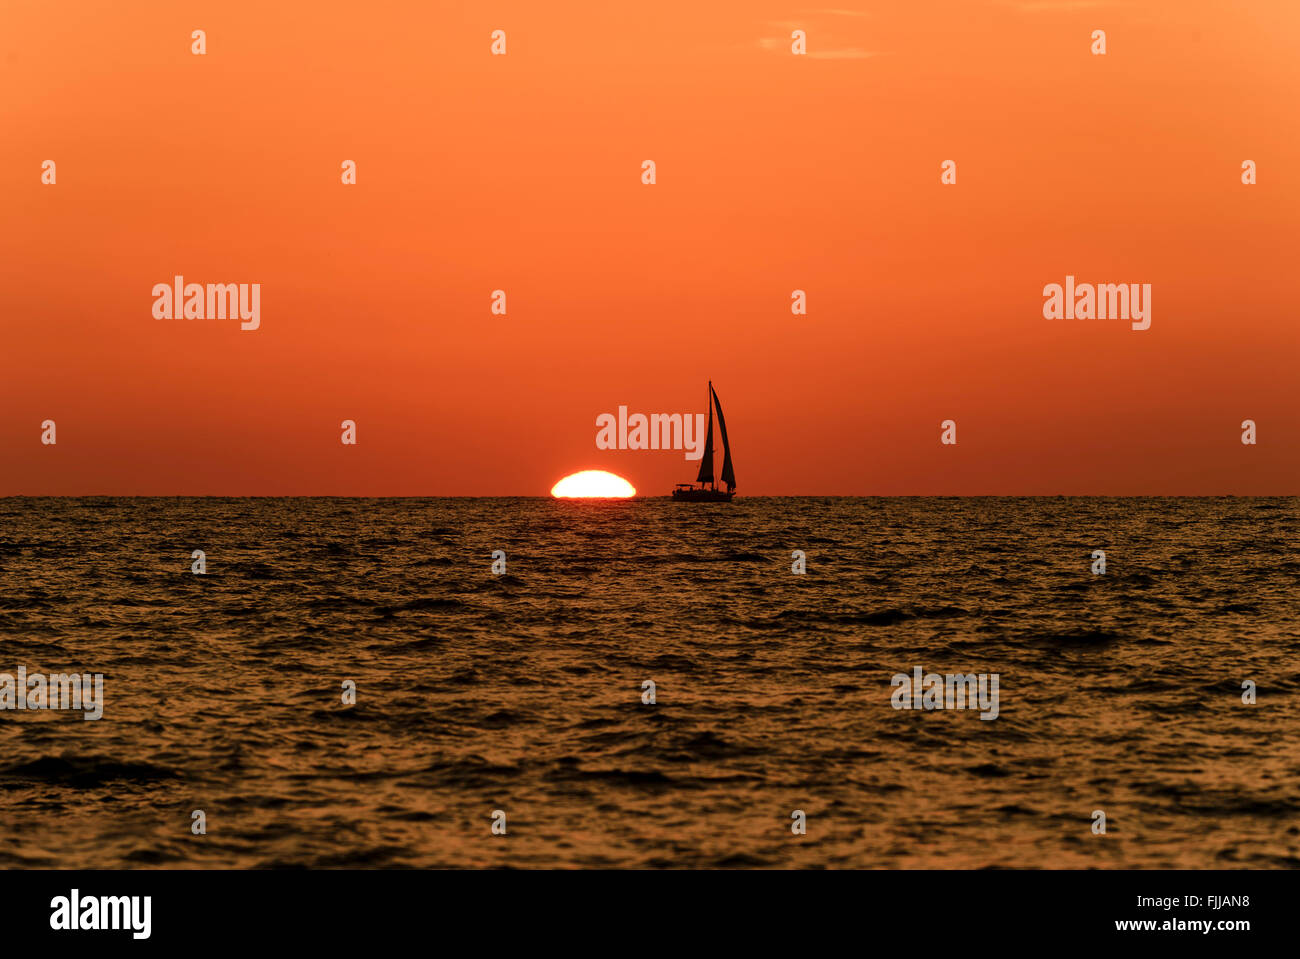 Voilier coucher du soleil est la silhouette d'un voilier avec un blanc chaud brûlant de soleil sur l'océan contre un horizon orange vif Banque D'Images